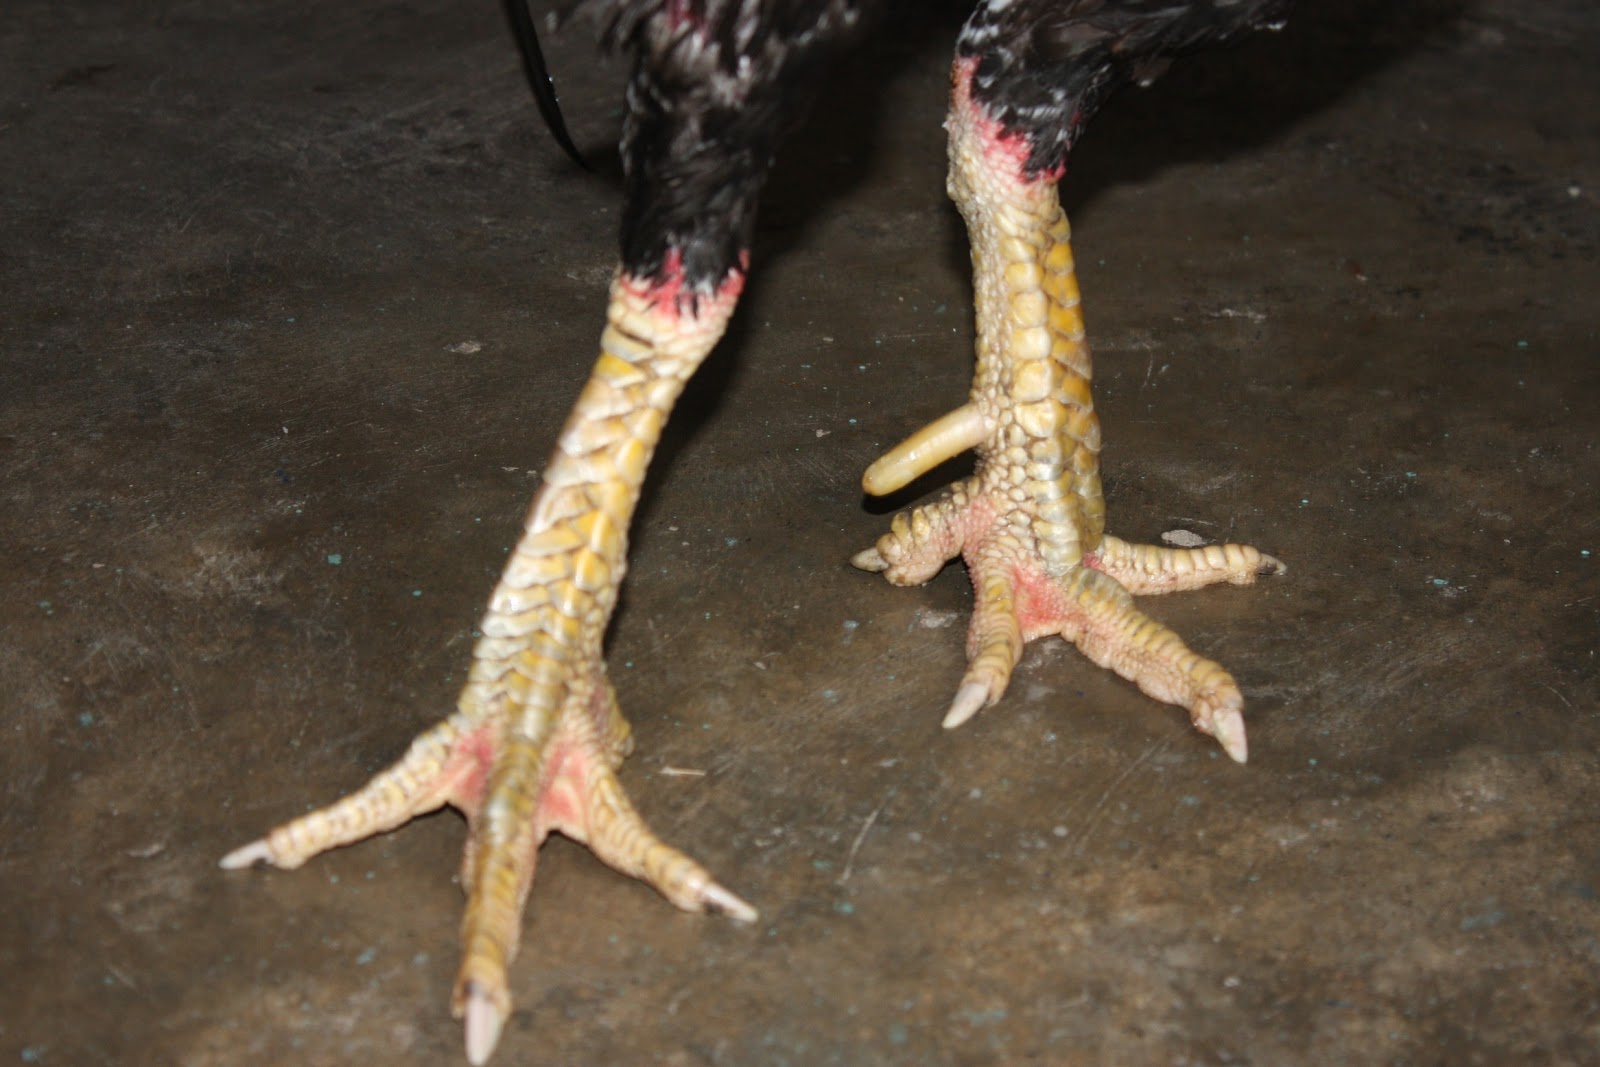  Ayam  Laga Ayam  Bangkok Aduan Jual Ayam  Pakan Obat obatan 